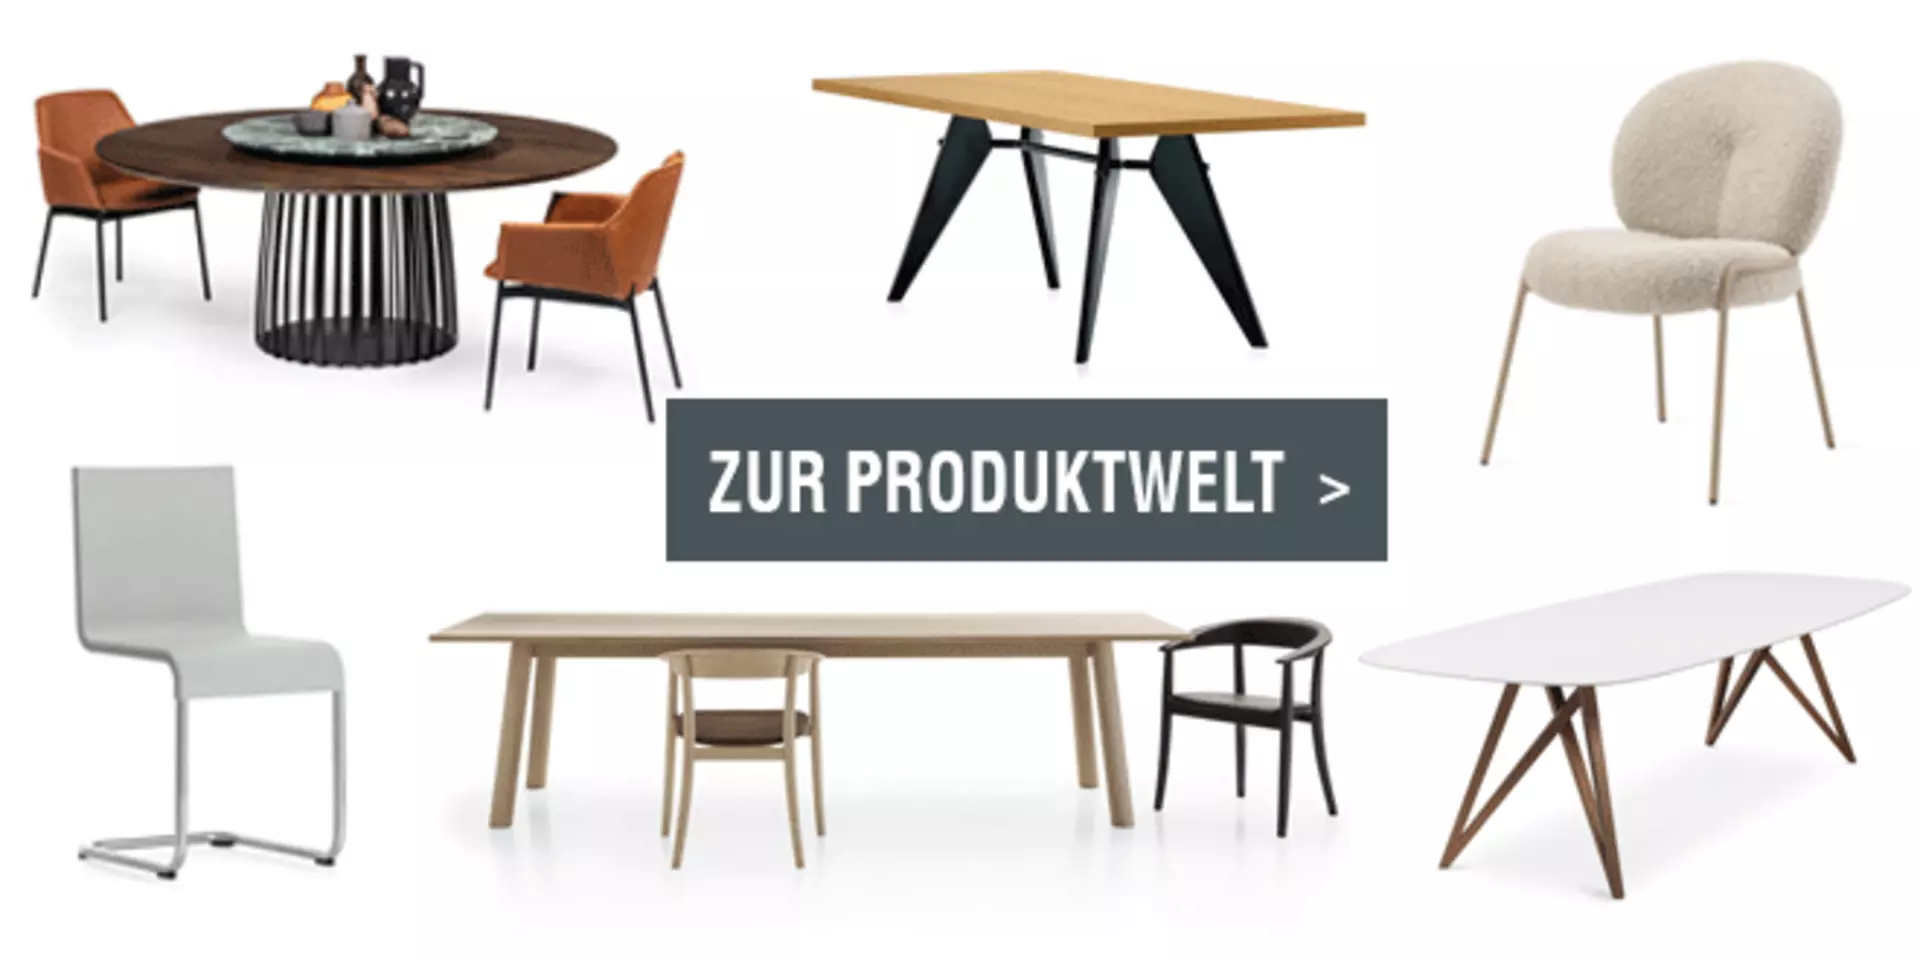 Linkbild zur Tisch- und Stuhl-Produktwelt von interni